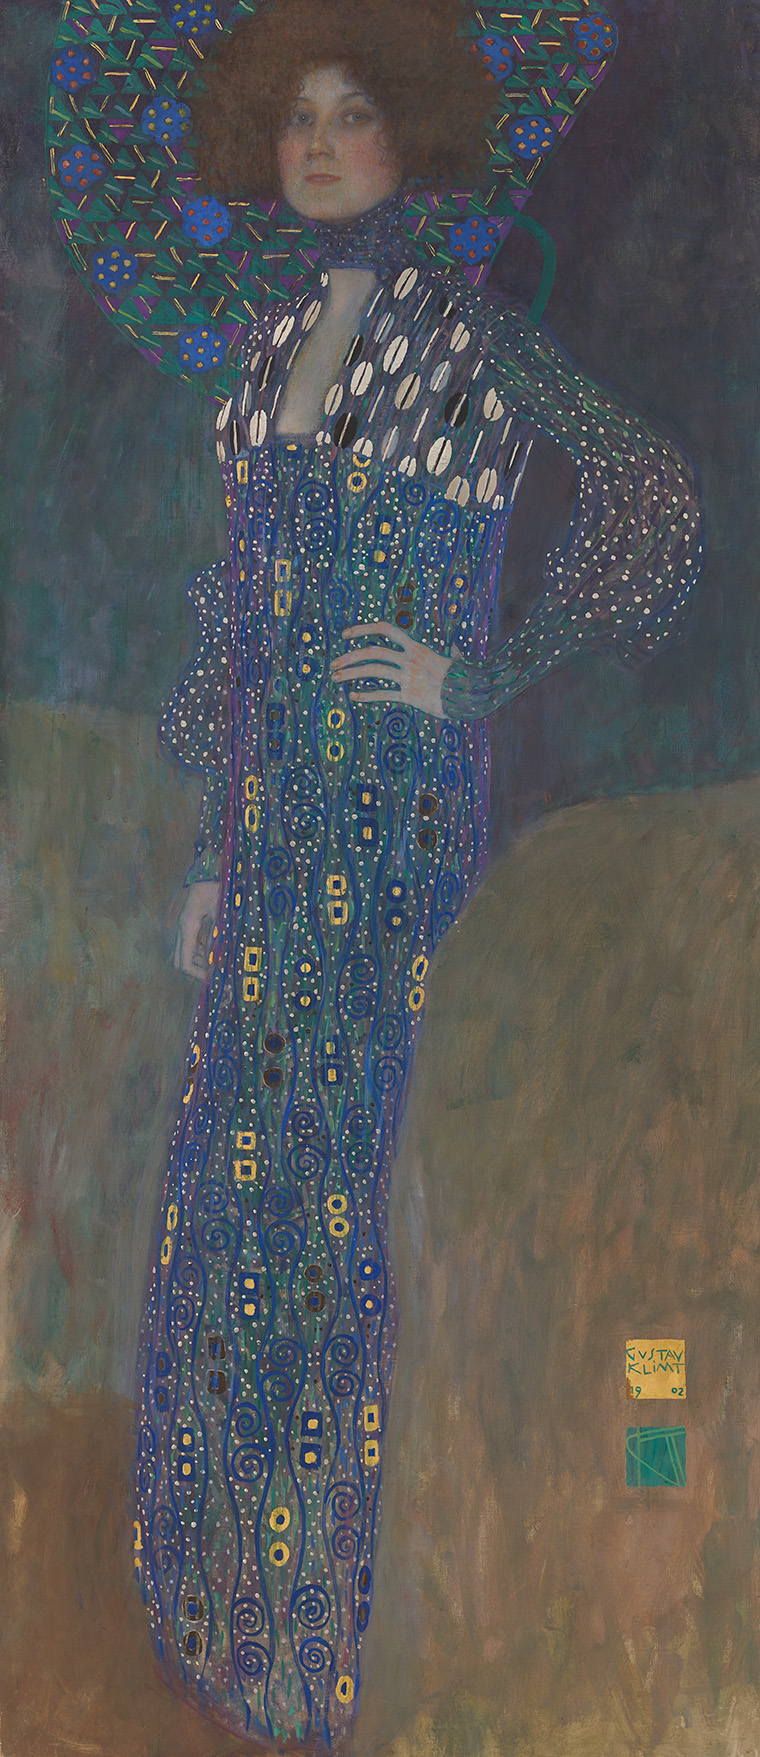 Bildnis von Emilie Flöge in einem lila gemusterten Kleid mit goldigen und weißen Akzenten, Muster ziert auch den Hintergrund der lockigen Haare